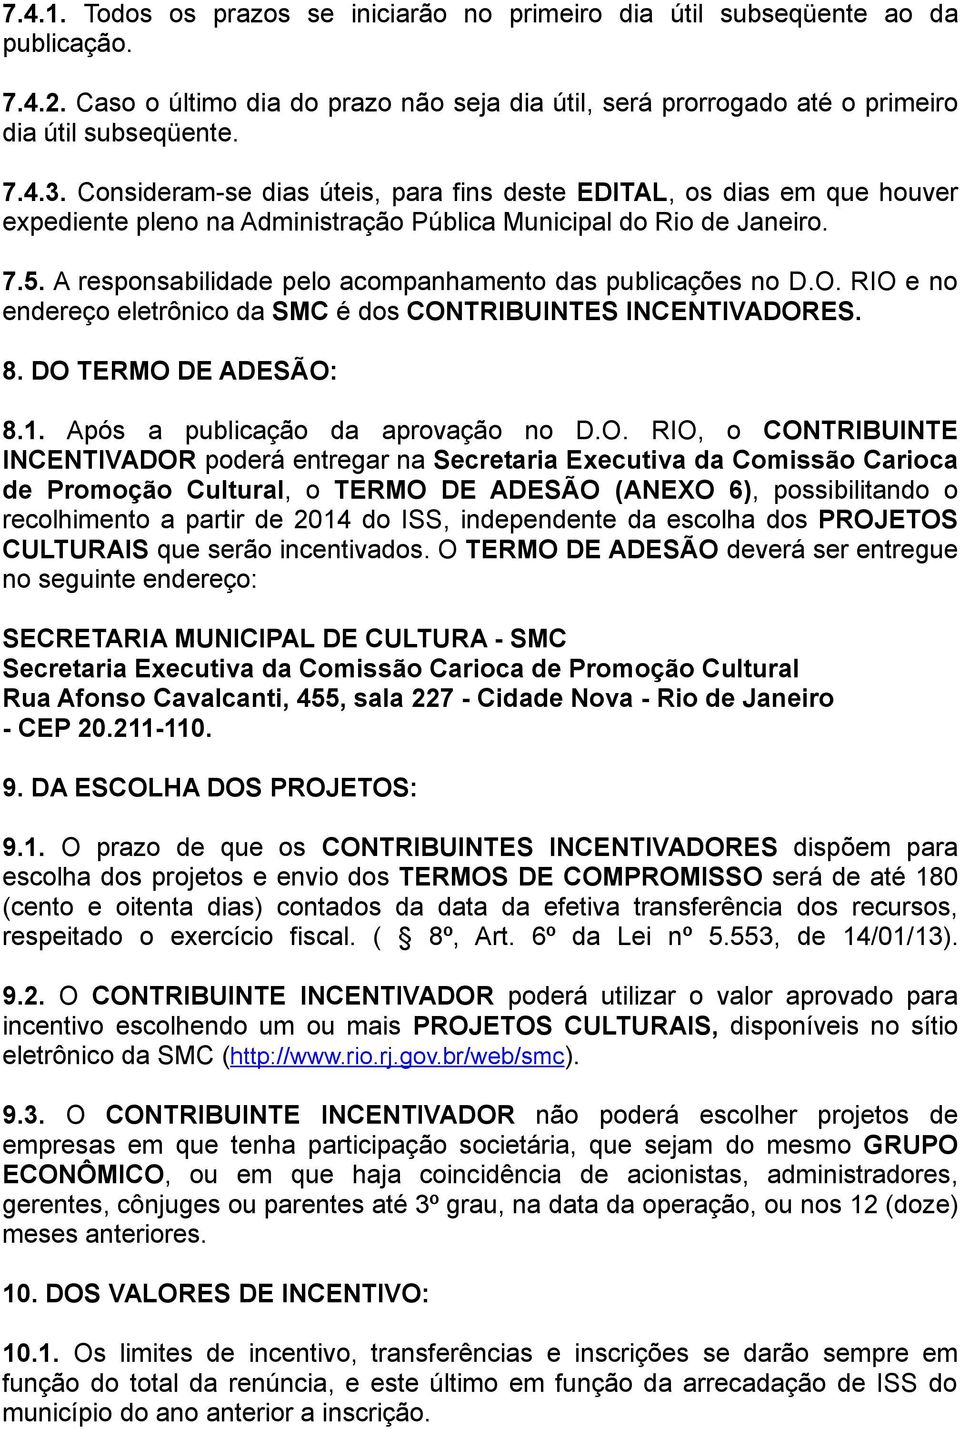 A responsabilidade pelo acompanhamento das publicações no D.O. RIO e no endereço eletrônico da SMC é dos CONTRIBUINTES INCENTIVADORES. 8. DO TERMO DE ADESÃO: 8.1. Após a publicação da aprovação no D.